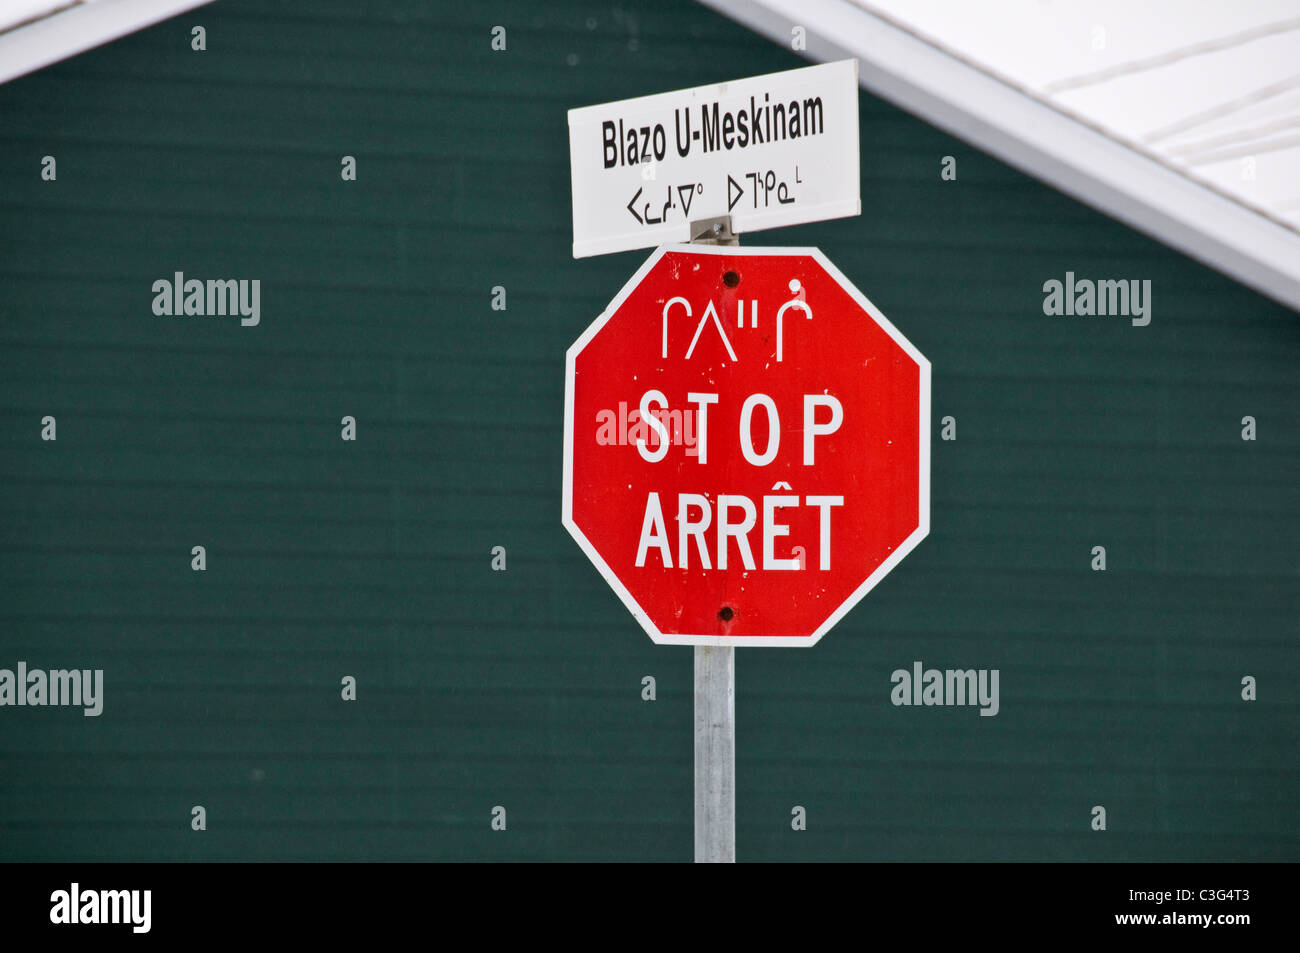 Stop-Schild in Französisch, Englisch und Cree Sprachen in der Cree Mistissini nördlichen Quebec Kanada Stockfoto